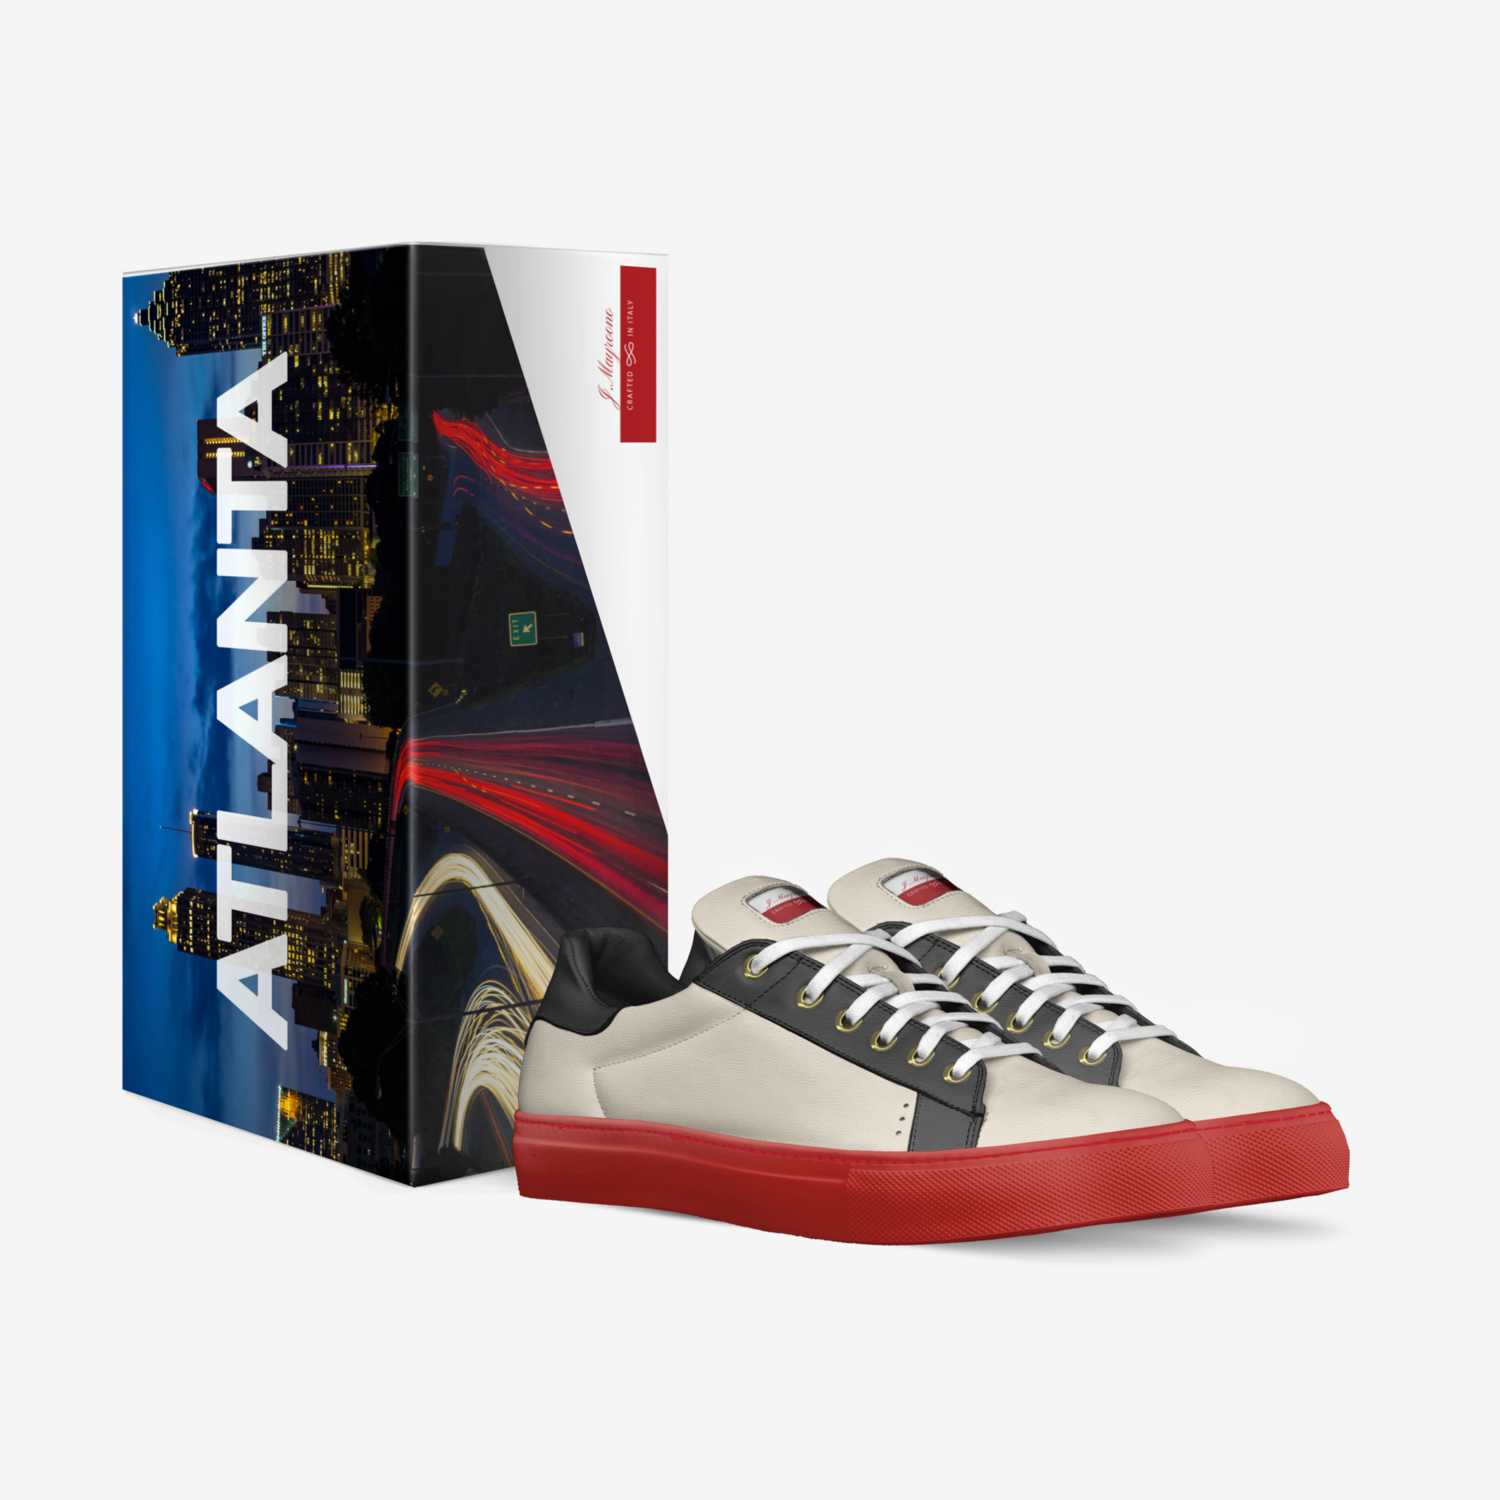 J.Mayroono custom made in Italy shoes by James May | Box view